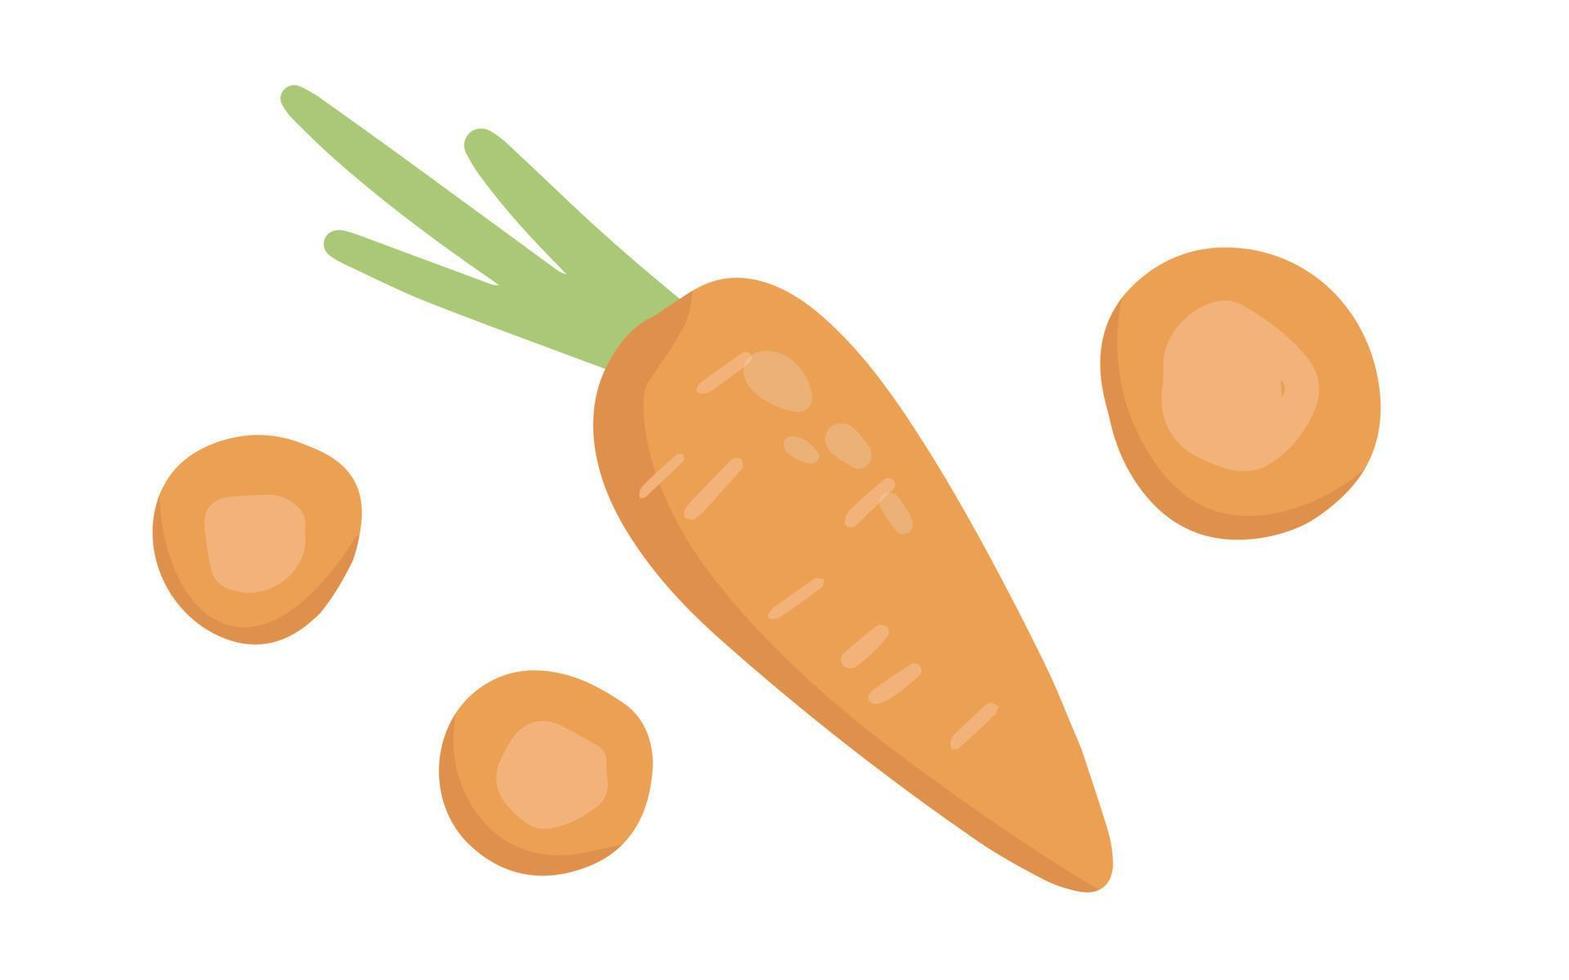 zanahoria dibujada a mano en estilo de dibujos animados. elementos alimentarios saludables. ilustración vectorial aislado sobre fondo blanco vector